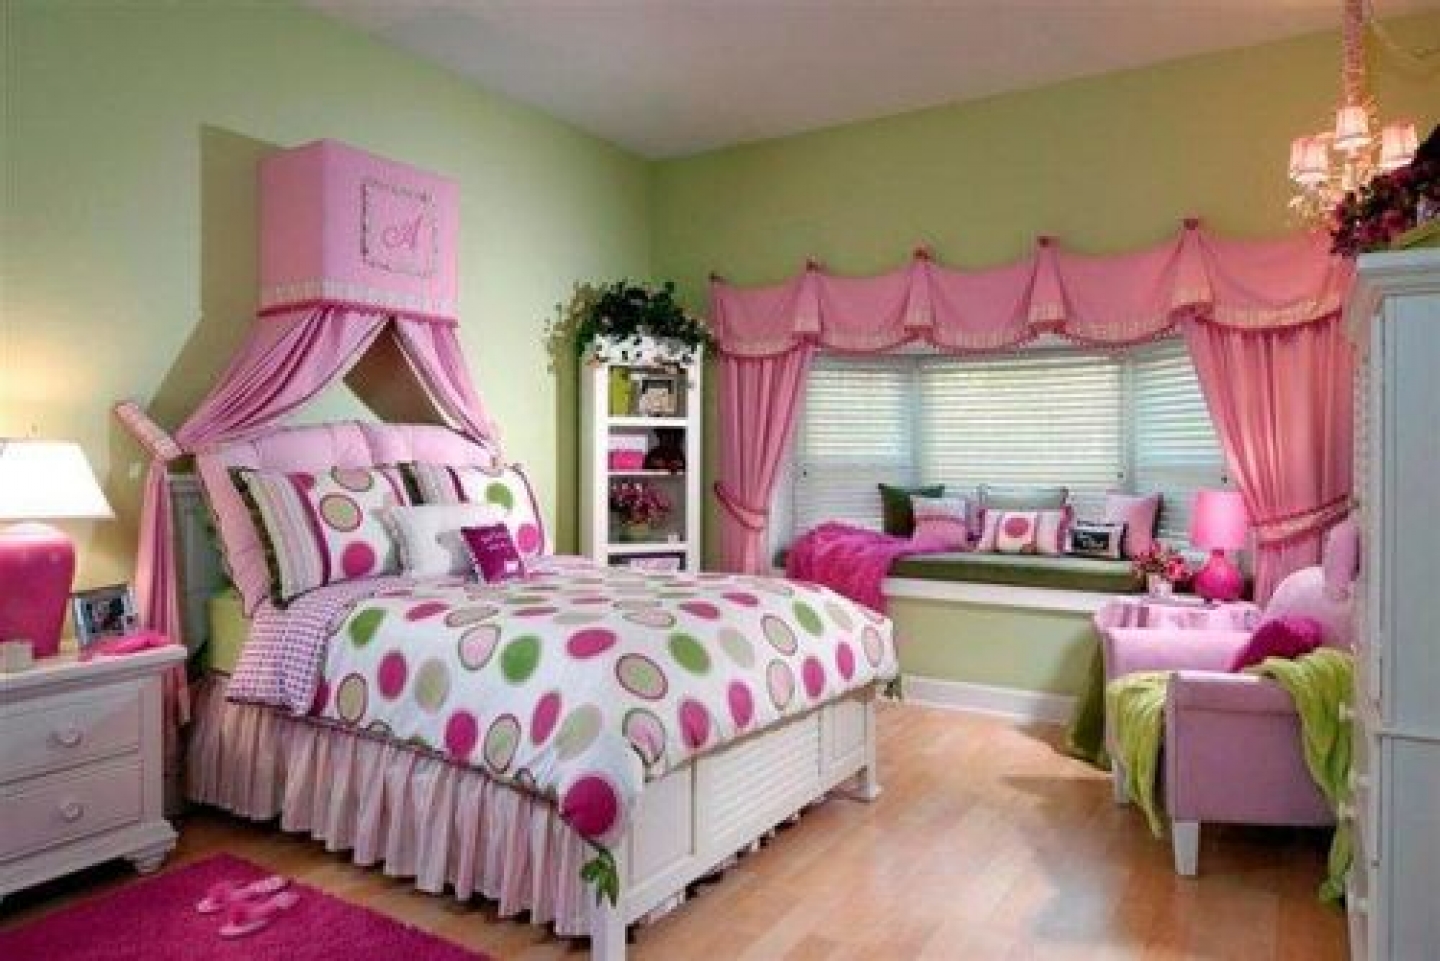  bedrooms bedrooms design girls girls bedr girls bedroom girls bedroom